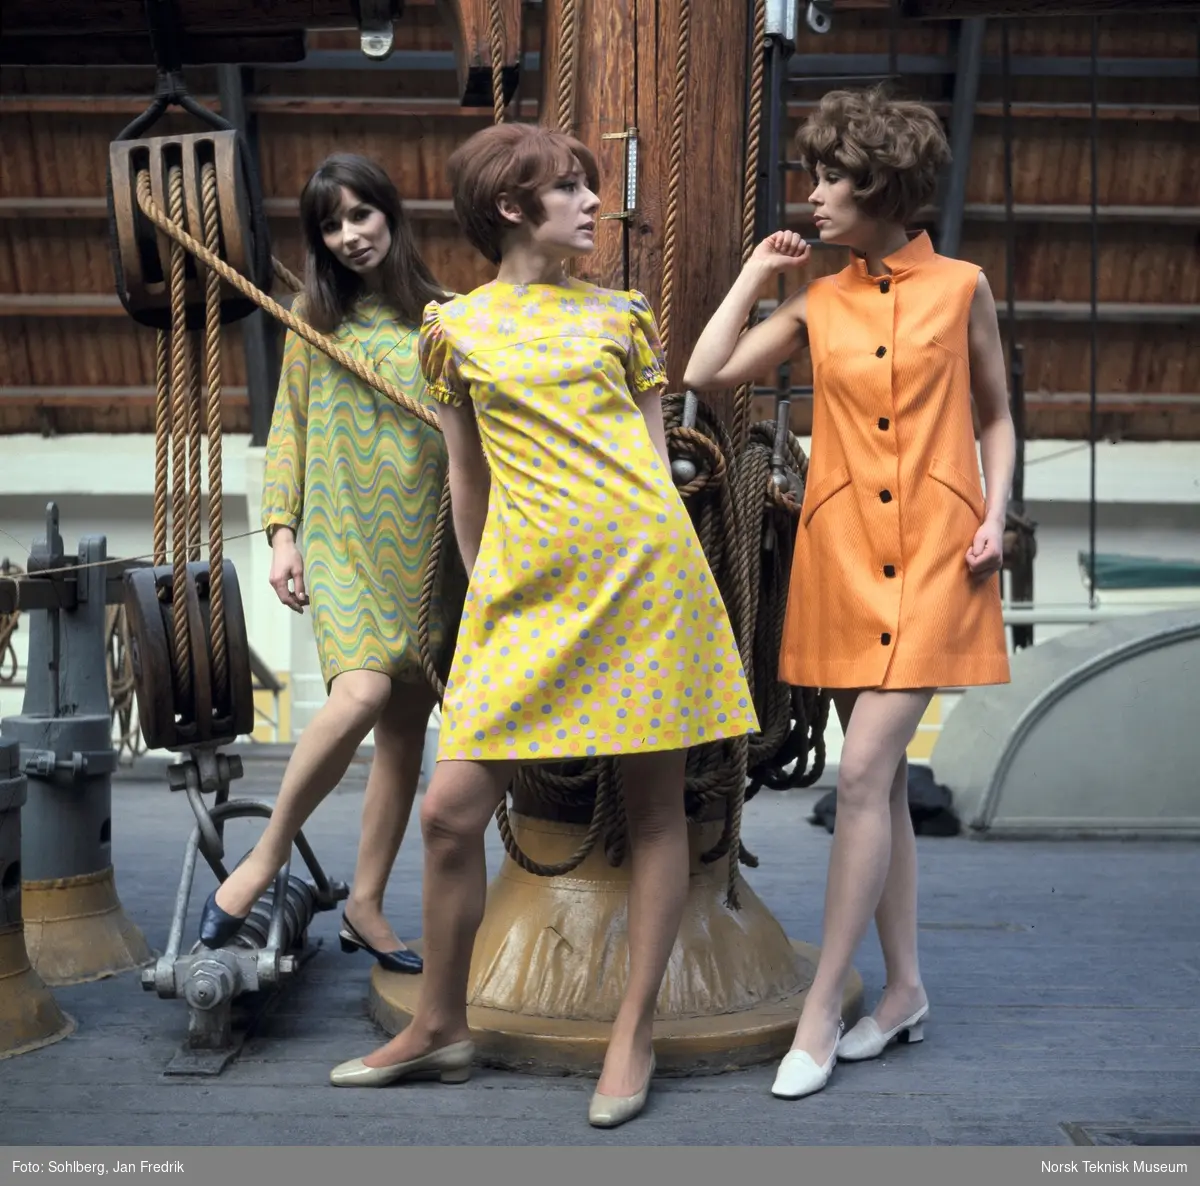 Reklamefoto. Tre kvinner i korte kjoler poserer ved en tremast på Maritimt Museum. 
Lignende motiv del av motereportasjen "'Fram' for norsk sommermote" publisert i Det Nye, nr. 18, 1. mai. 1968.